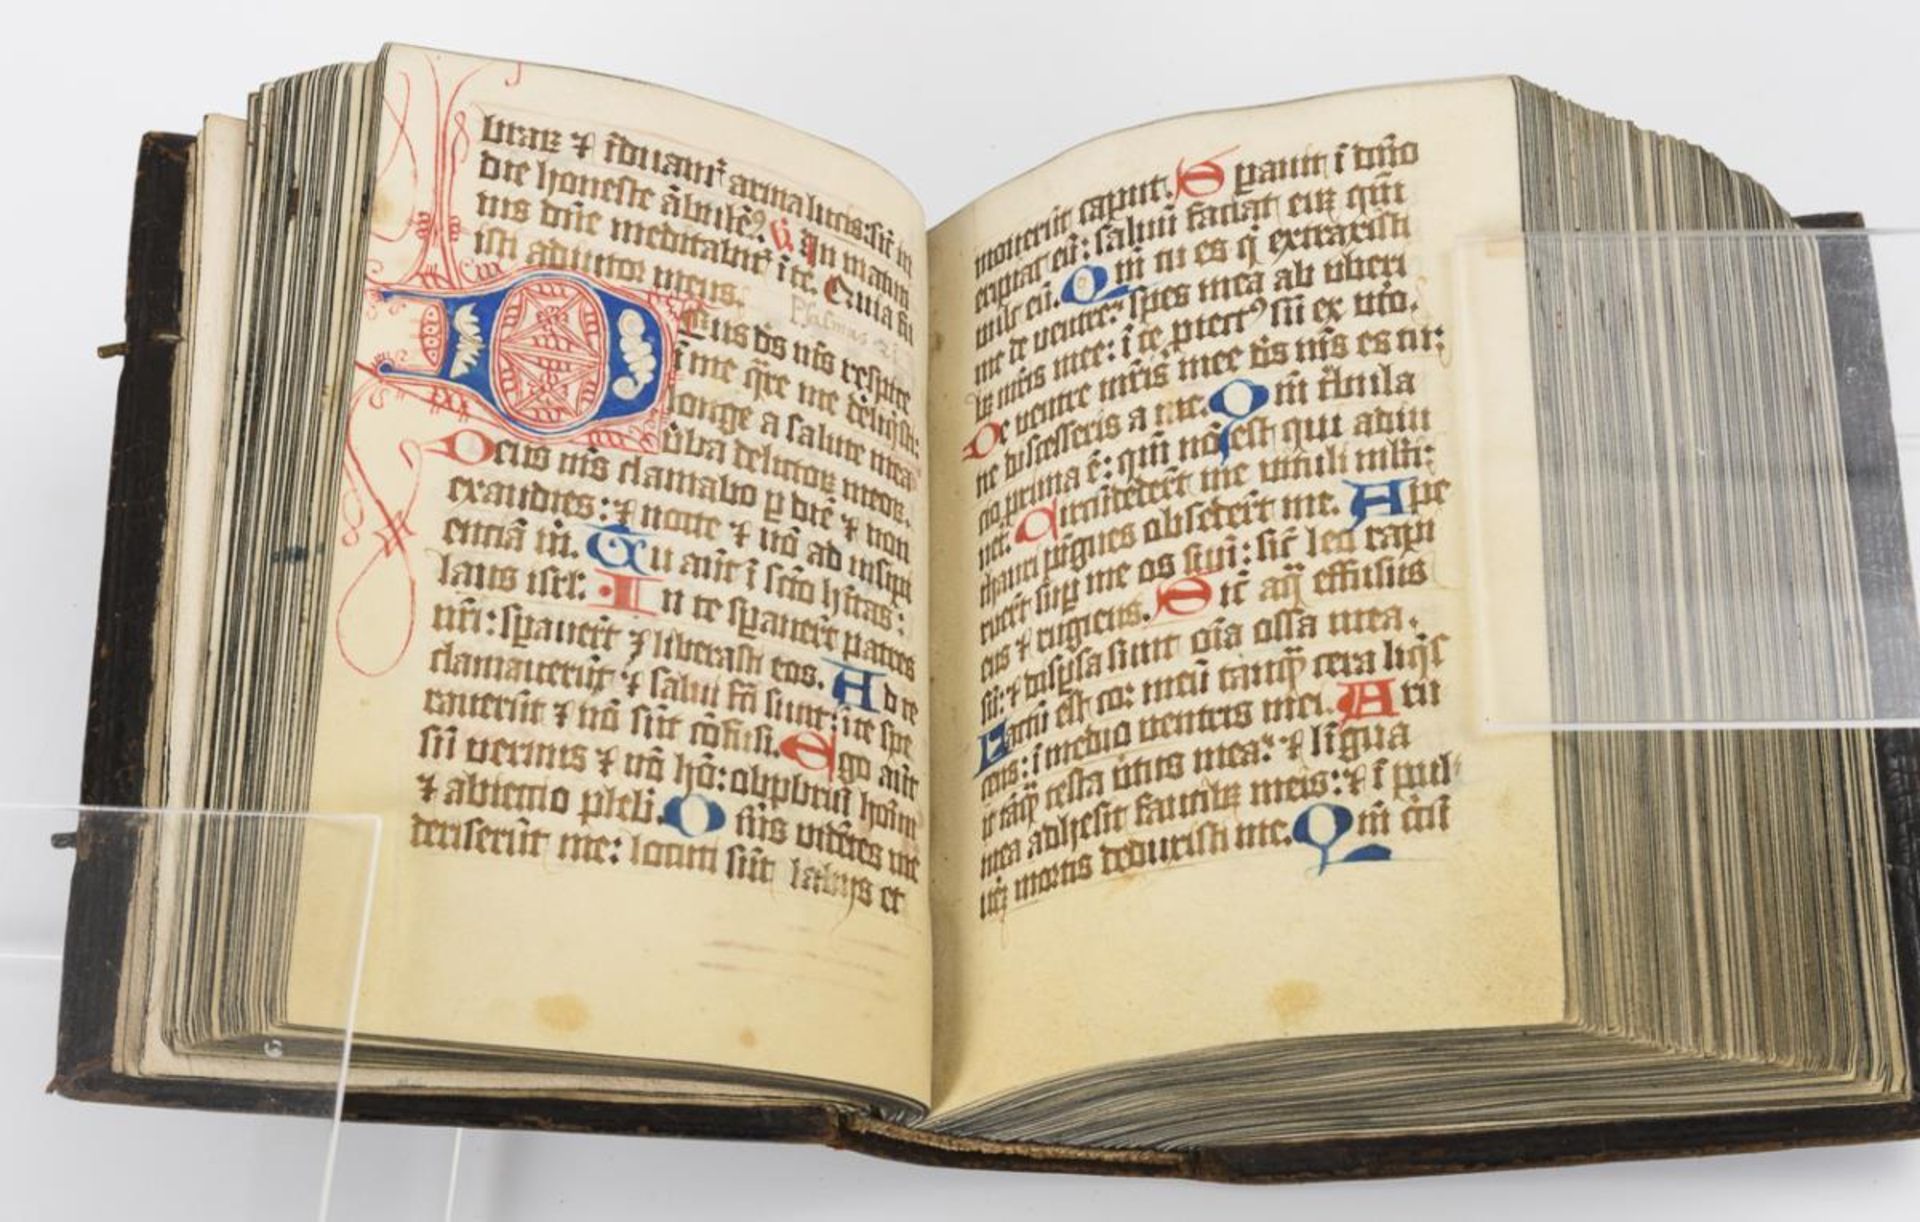 Mittelalterliche Handschrift - Brevier. - Image 22 of 25